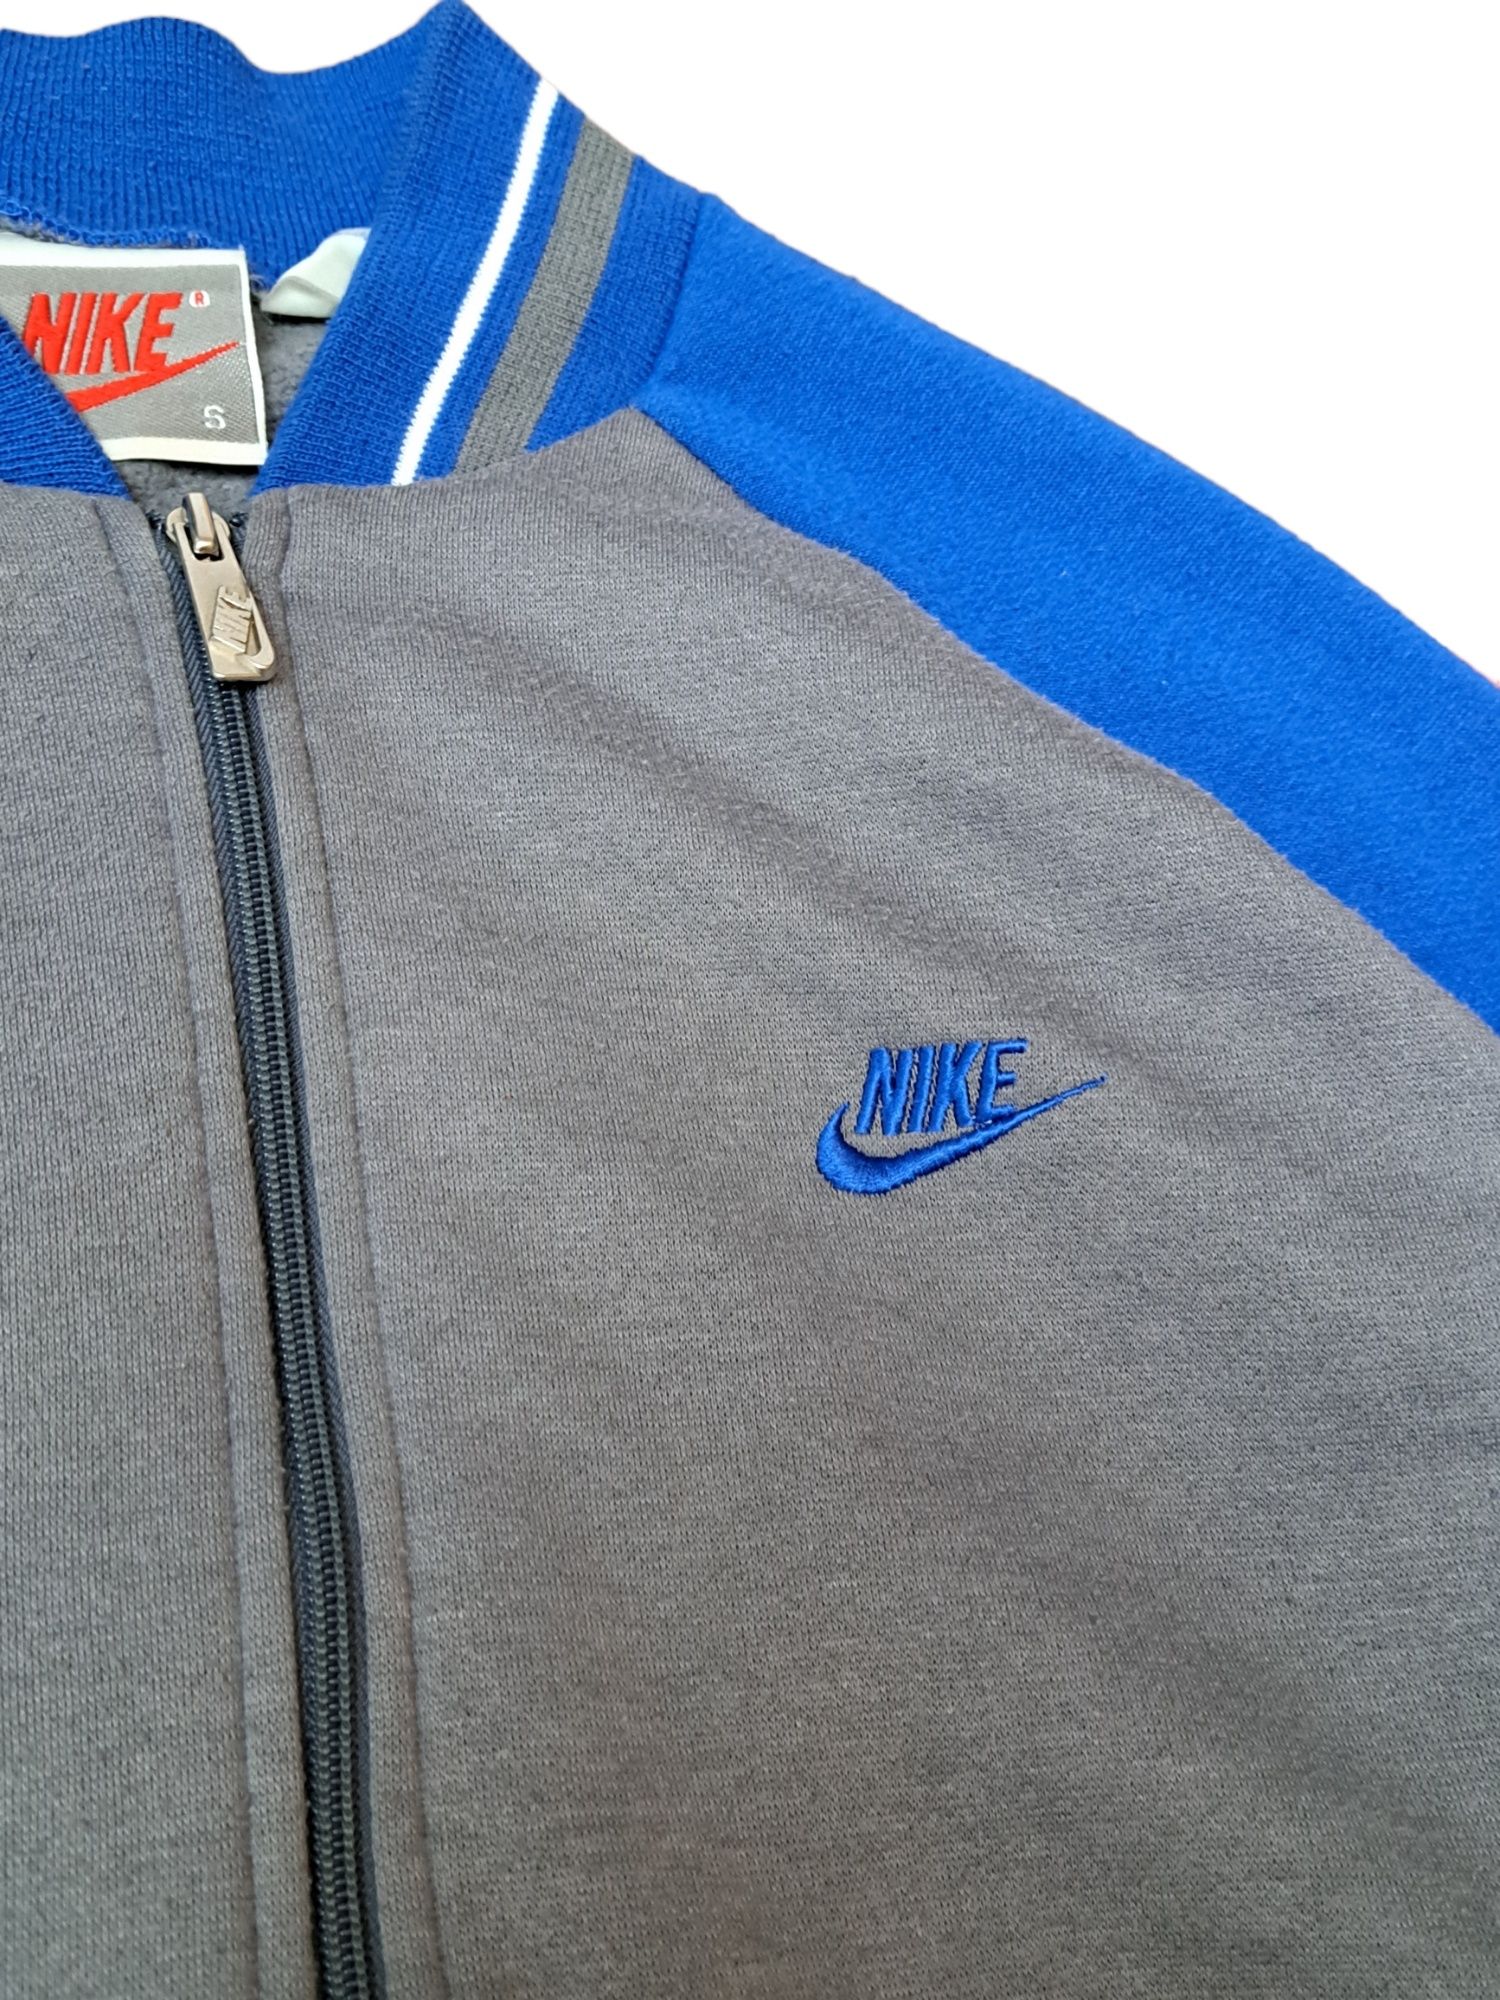 Niebiesko - szara Bluza Bomberka Nike z lat 90s, Adidas Asics Reebok